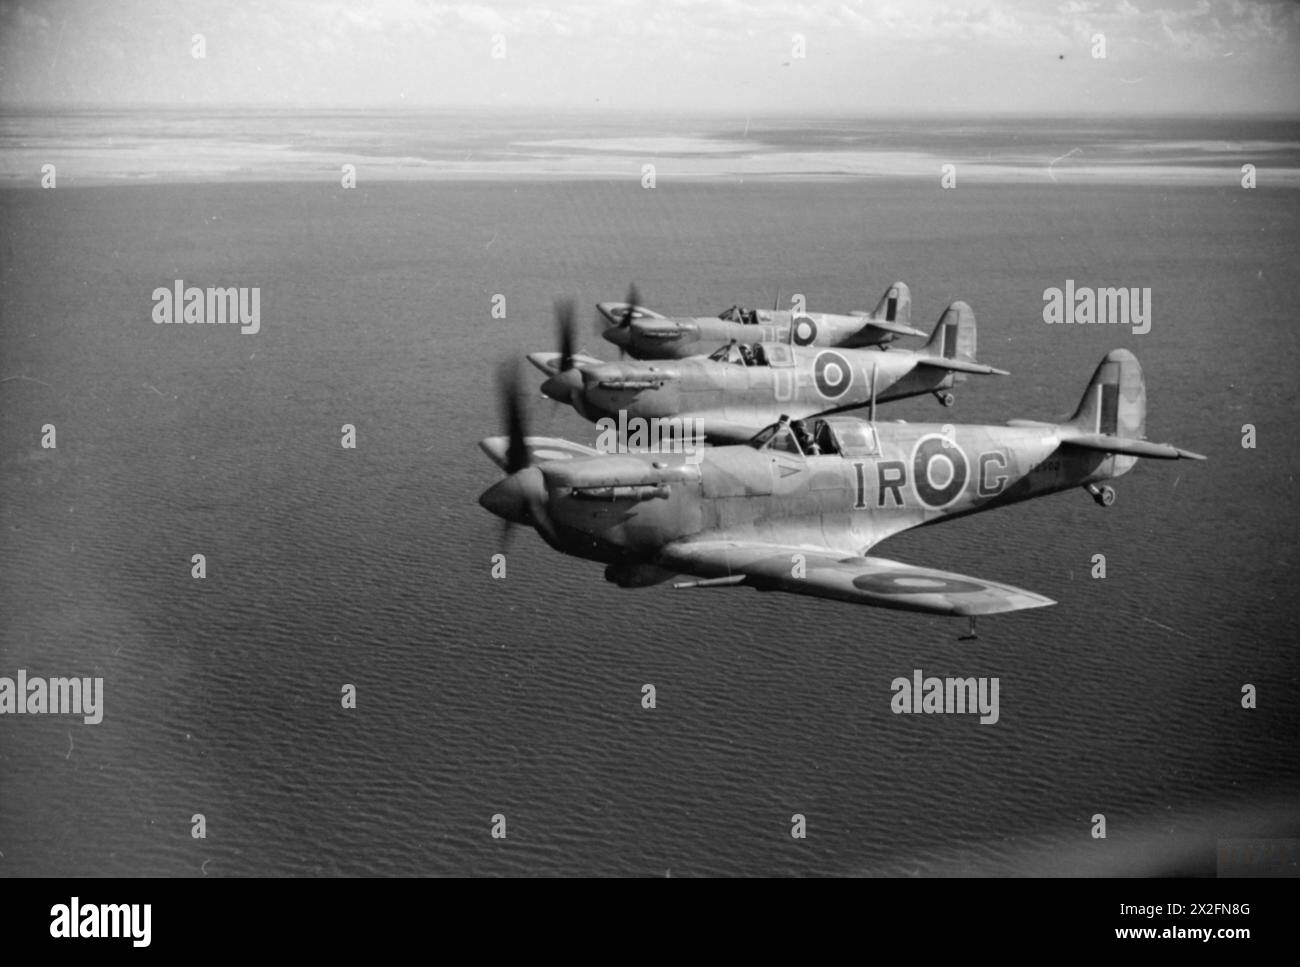 OPÉRATIONS DE LA ROYAL AIR FORCE AU MOYEN-ORIENT ET EN AFRIQUE DU NORD, 1939-1943. - Trois Spitfire LF Mark VBS de la 244e Escadre de la RAF basée à BU Grara, volant en formation tribord proche des échelons au large des côtes tunisiennes après avoir escorté des bombardiers légers sur une sortie vers Mareth. AB502 «IR-G», au premier plan, est l'avion personnel du Wing leader, Wing commander I R «Widge» Gleed, qu'il a piloté lorsqu'il a été abattu et tué au-dessus du Cap bon le 16 avril 1943, tandis que les deux avions qui l'accompagnaient sont ER220 «UF-V» et EP481 «UF-F» du No. 601 Squadron RAF. Tous les trois sont équipés de filtres à air Aboukir et ha Banque D'Images